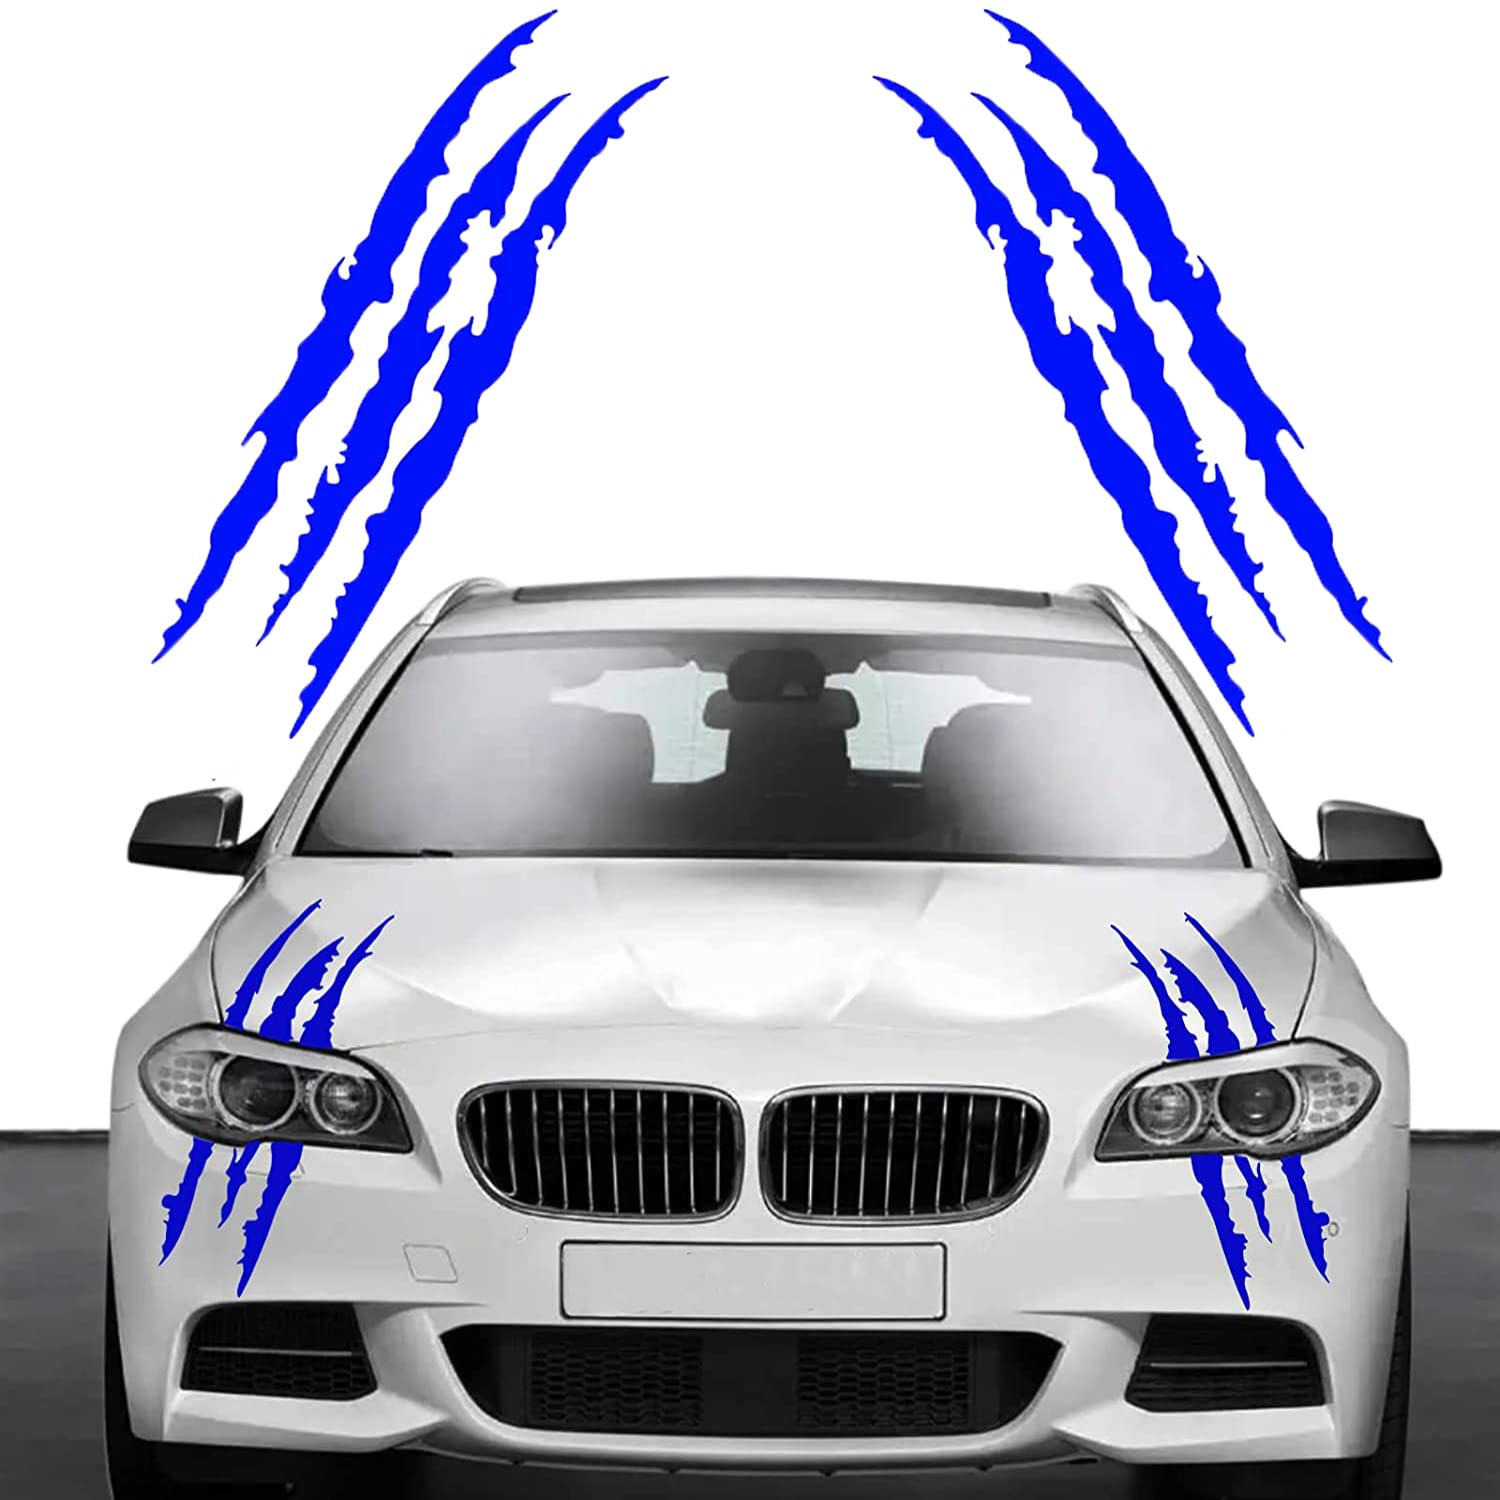 VICDUEKG Monster Klaue Aufkleber, 2 Stück Augenbrauen Scheinwerfer Aufkleber Auto Wasserfeste Vinyl Decals Autoaufkleber Dekoration Monster Klaue AutoAufkleber Aesthetic Sticker (Blau) von VICDUEKG